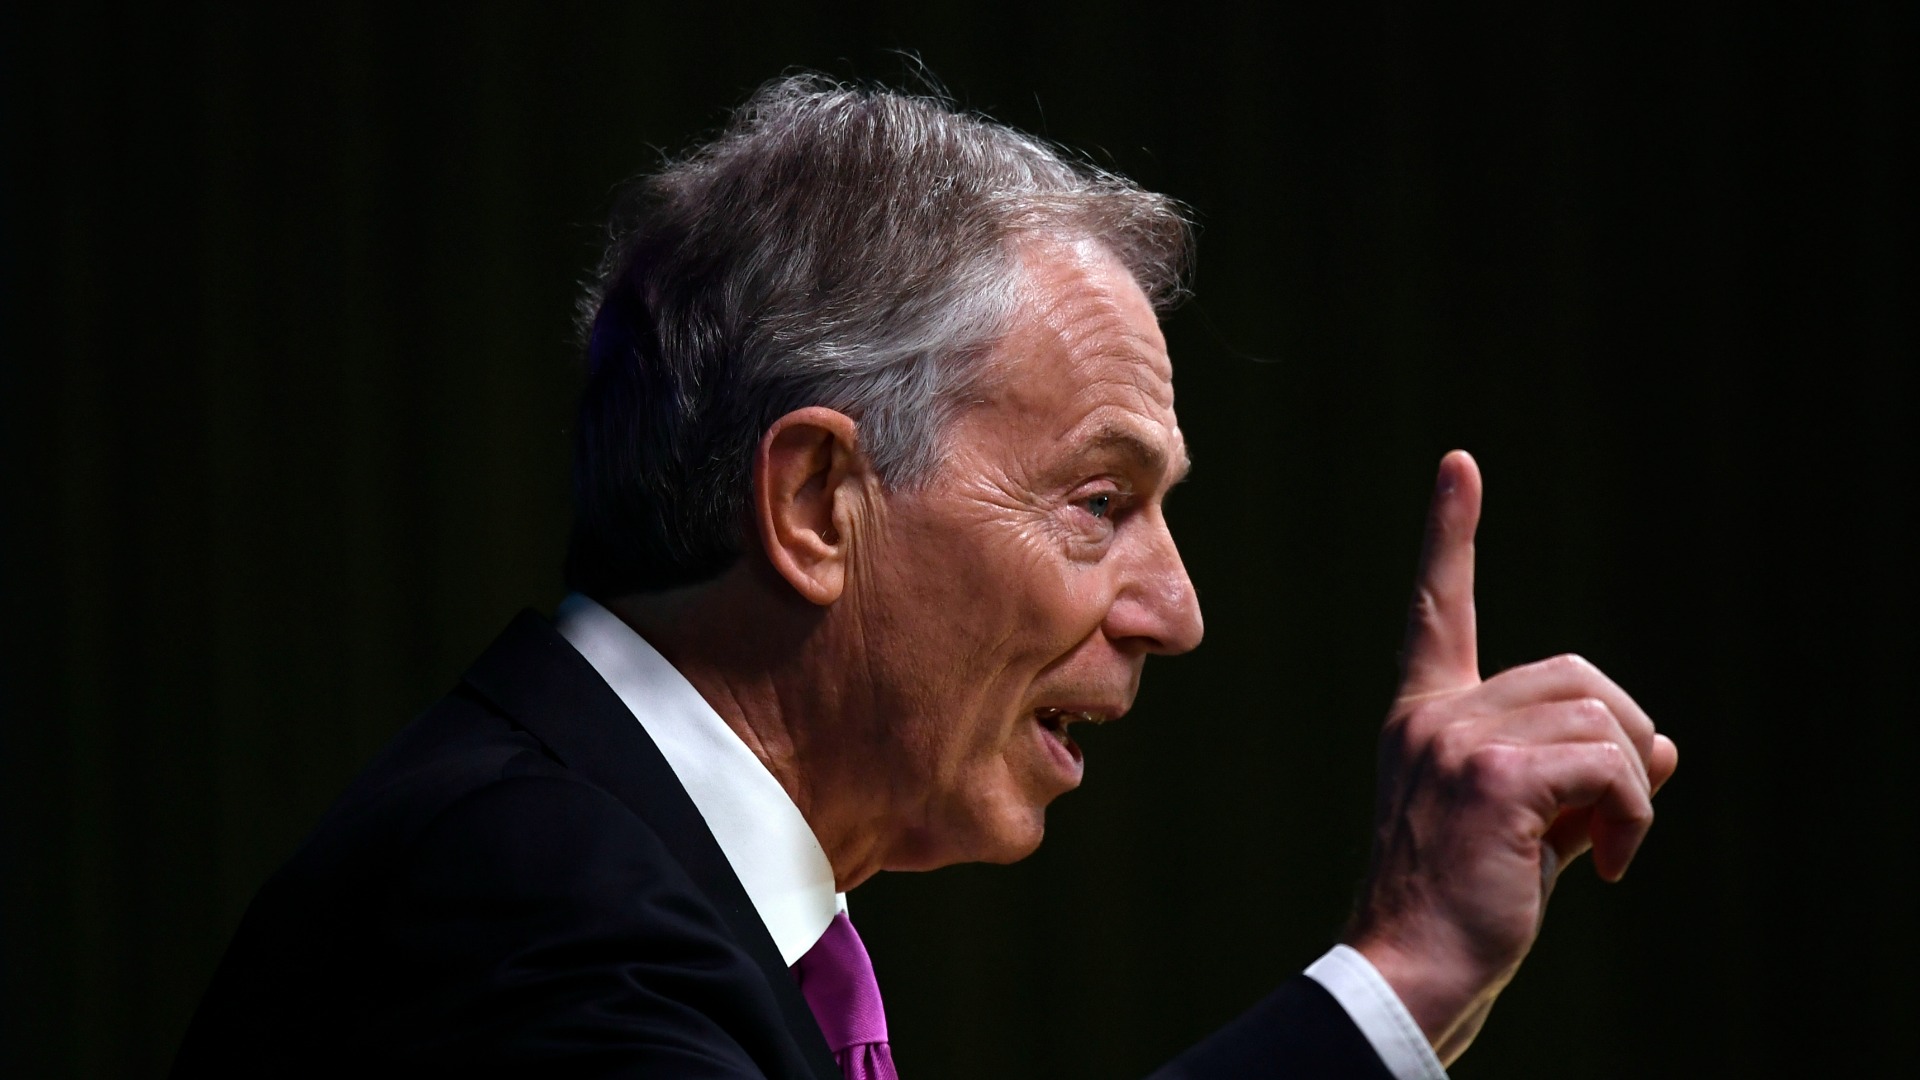 Tony Blair anuncia su regreso a la política para luchar contra el Brexit